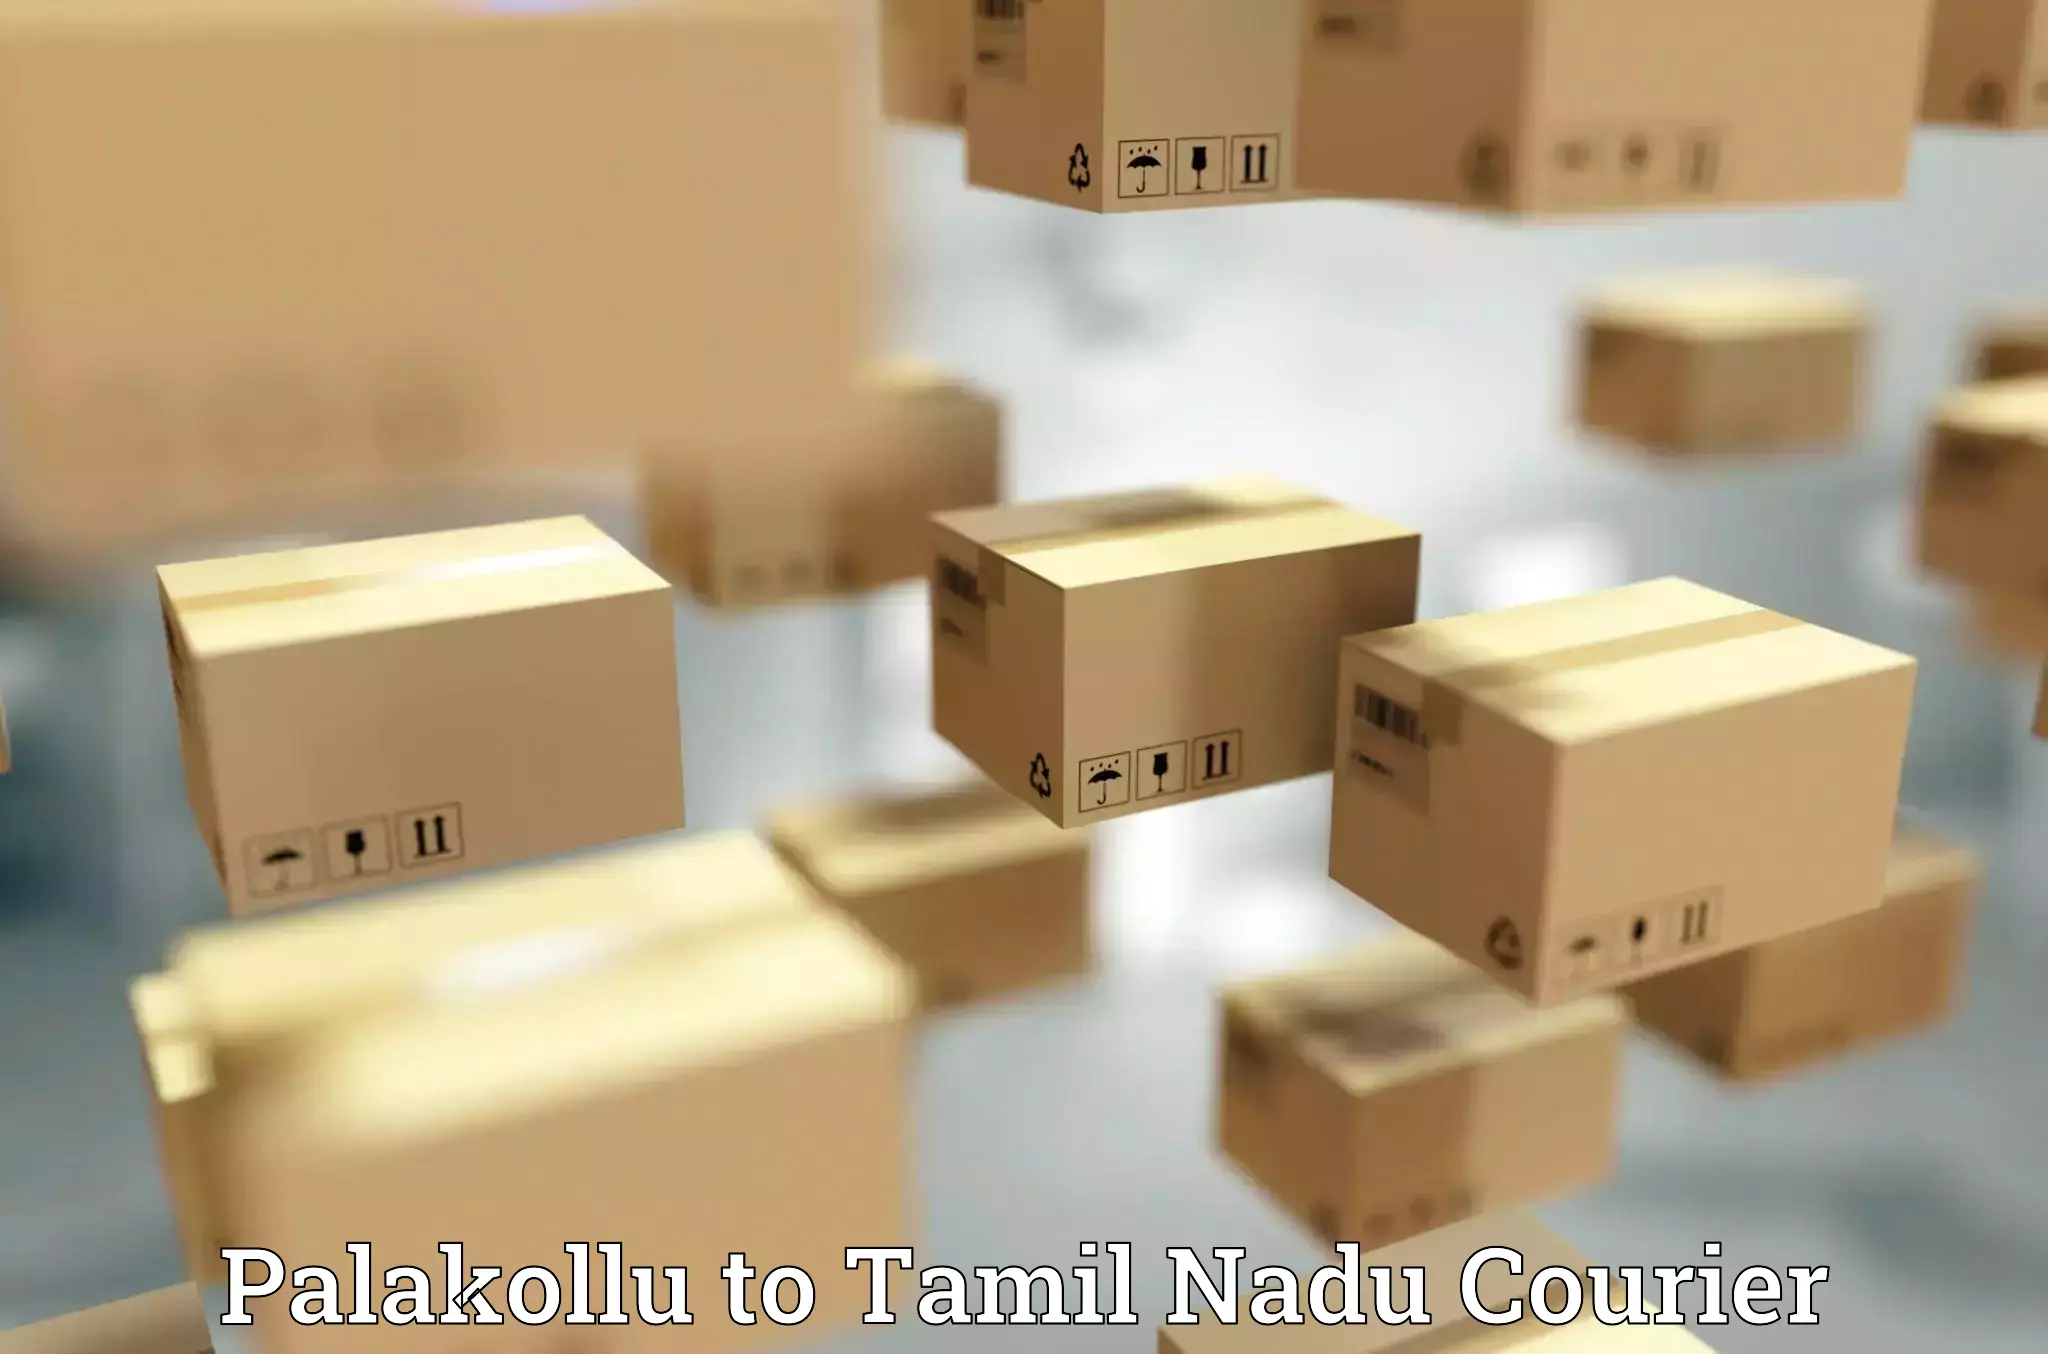 High-efficiency logistics Palakollu to Tamil Nadu